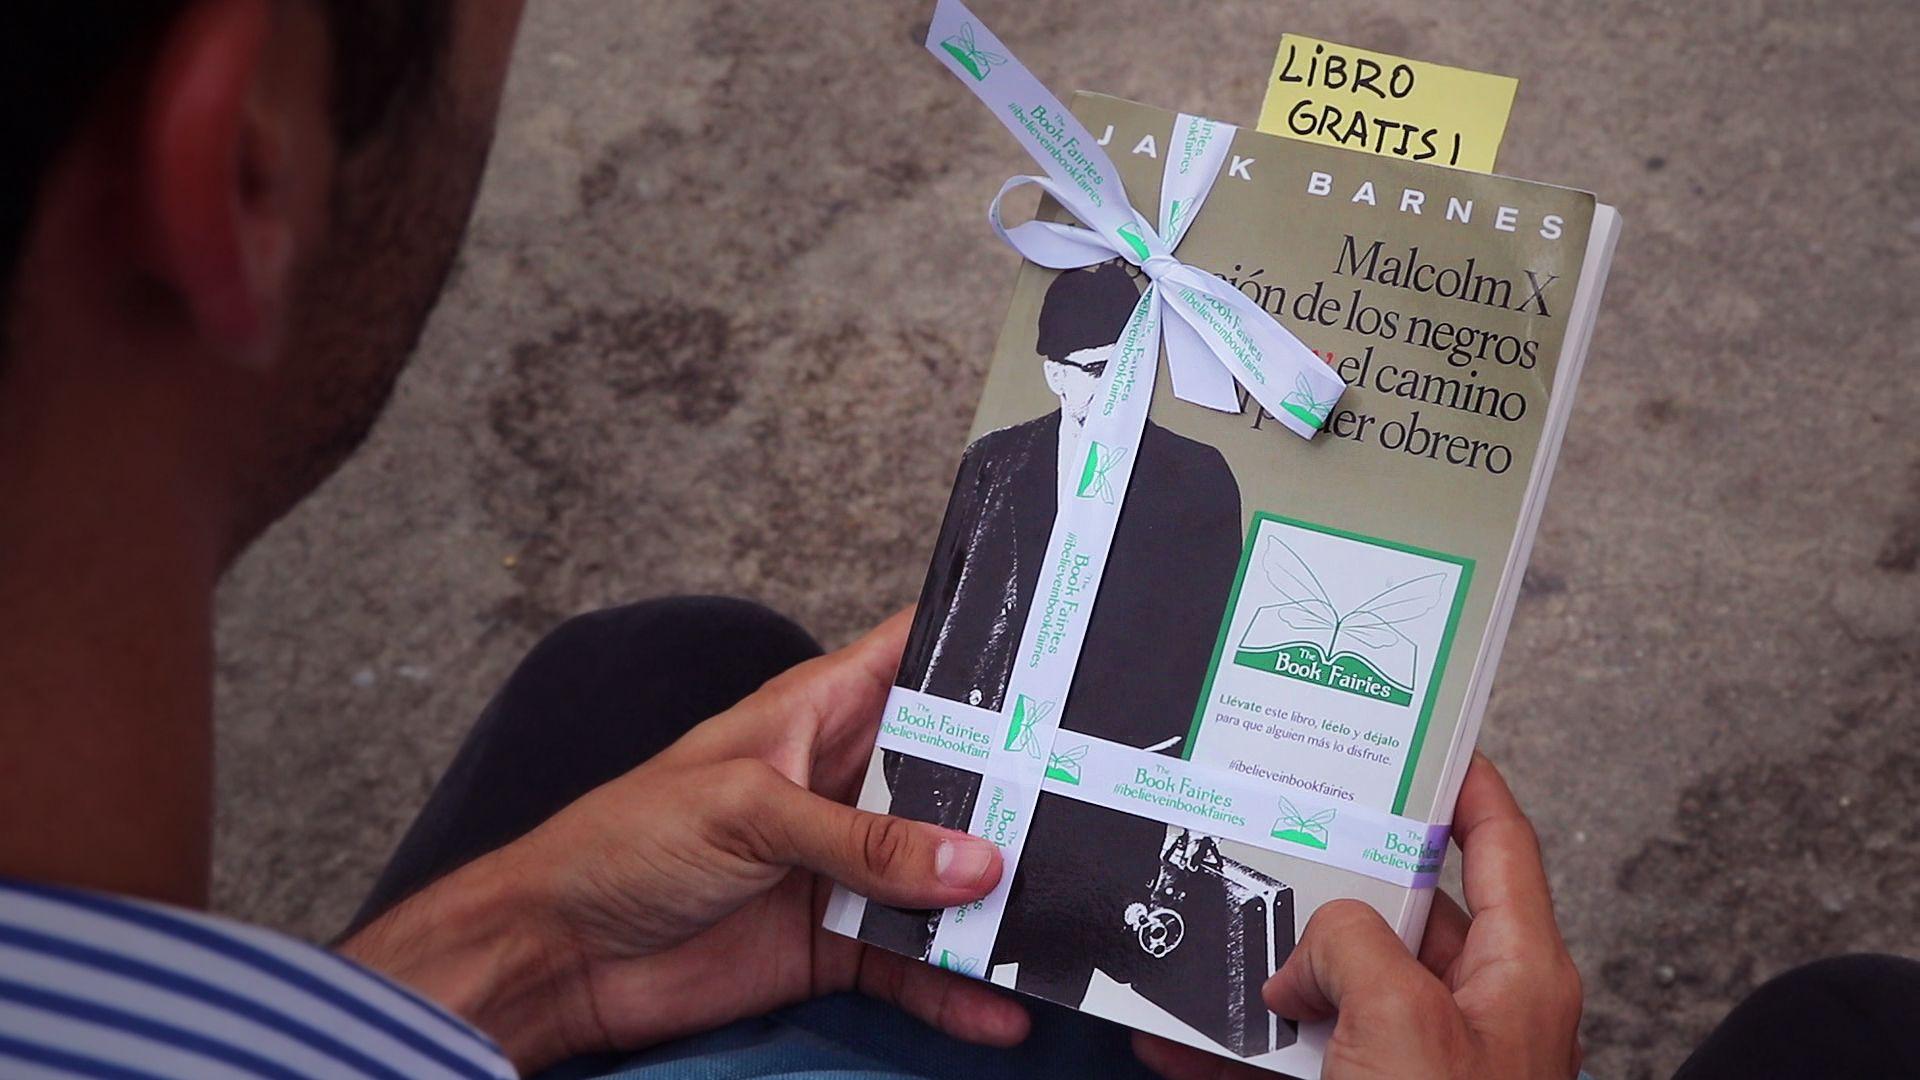 Hadas de los libros en Cuba: un vuelo incompleto